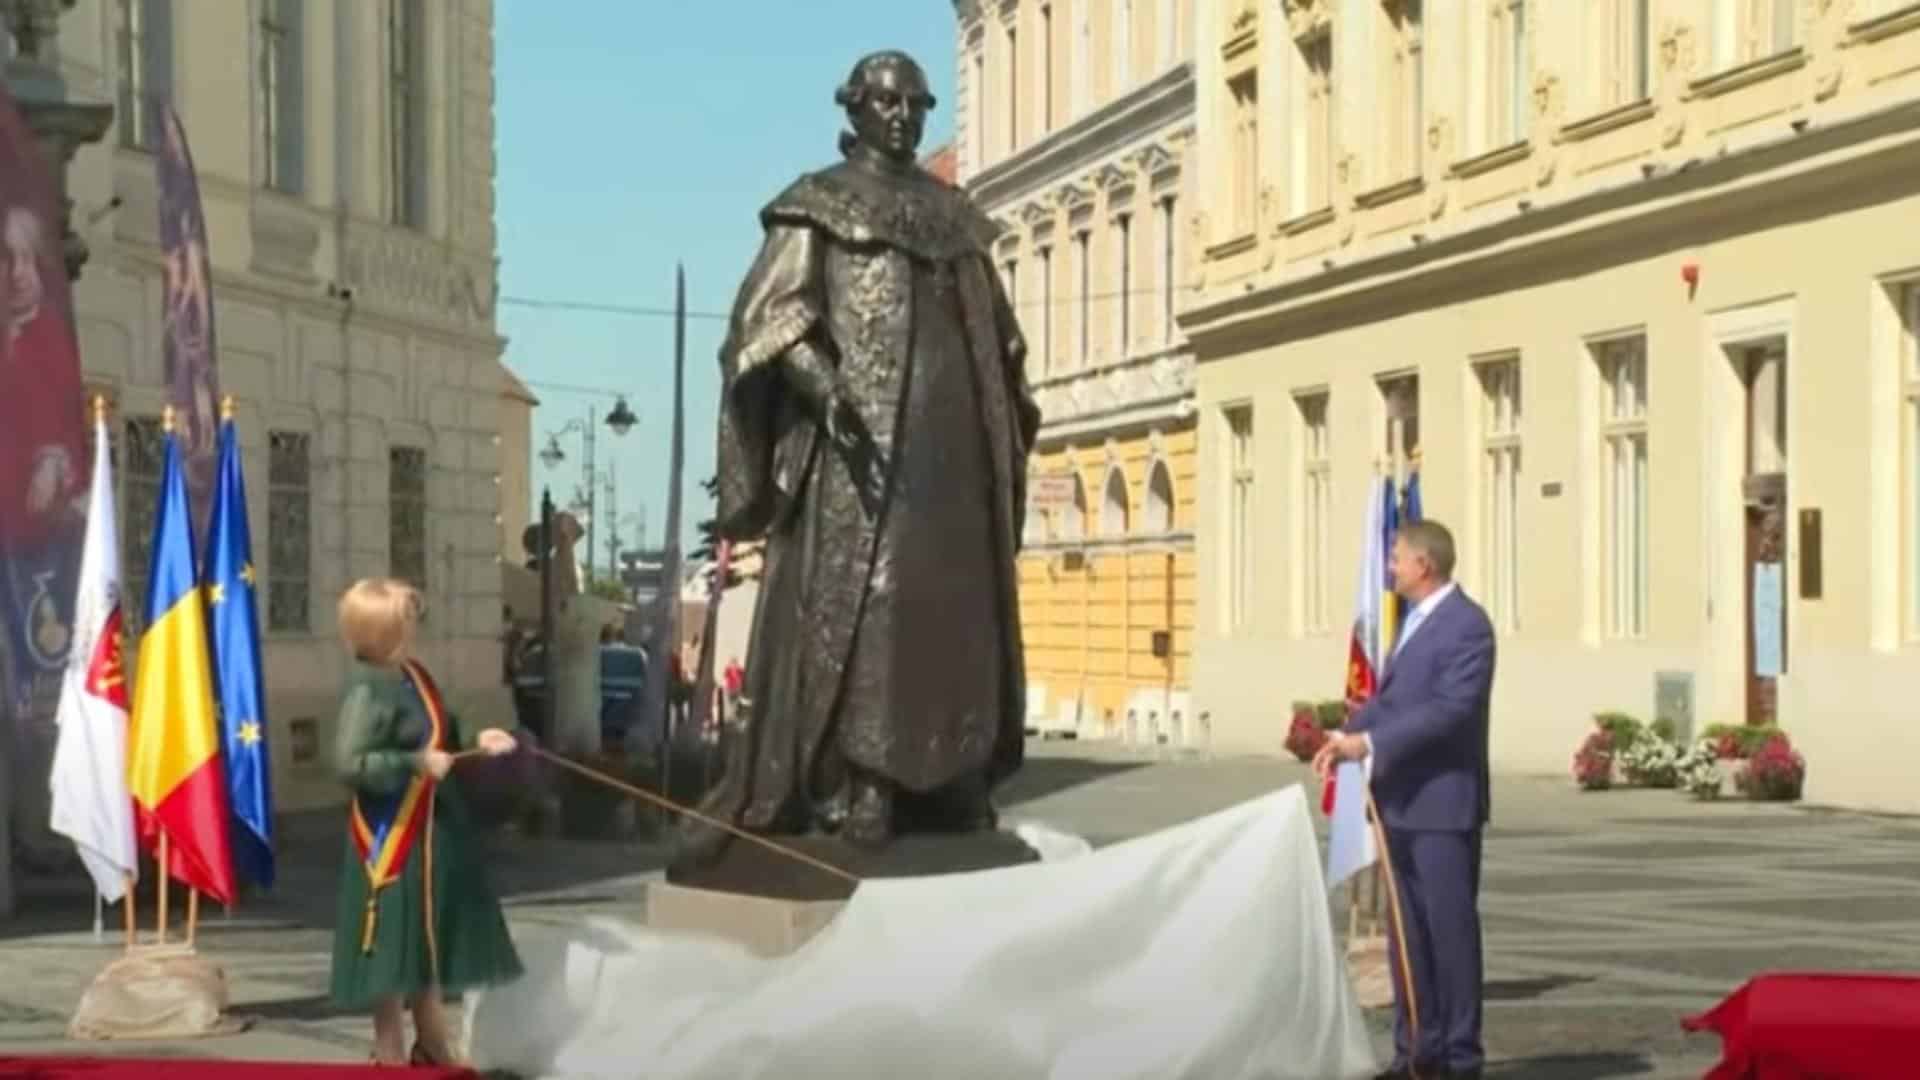 Președintele Iohannis se închină la statuia lui Bruckenthal, dar nu și la gorunul lui Iancu